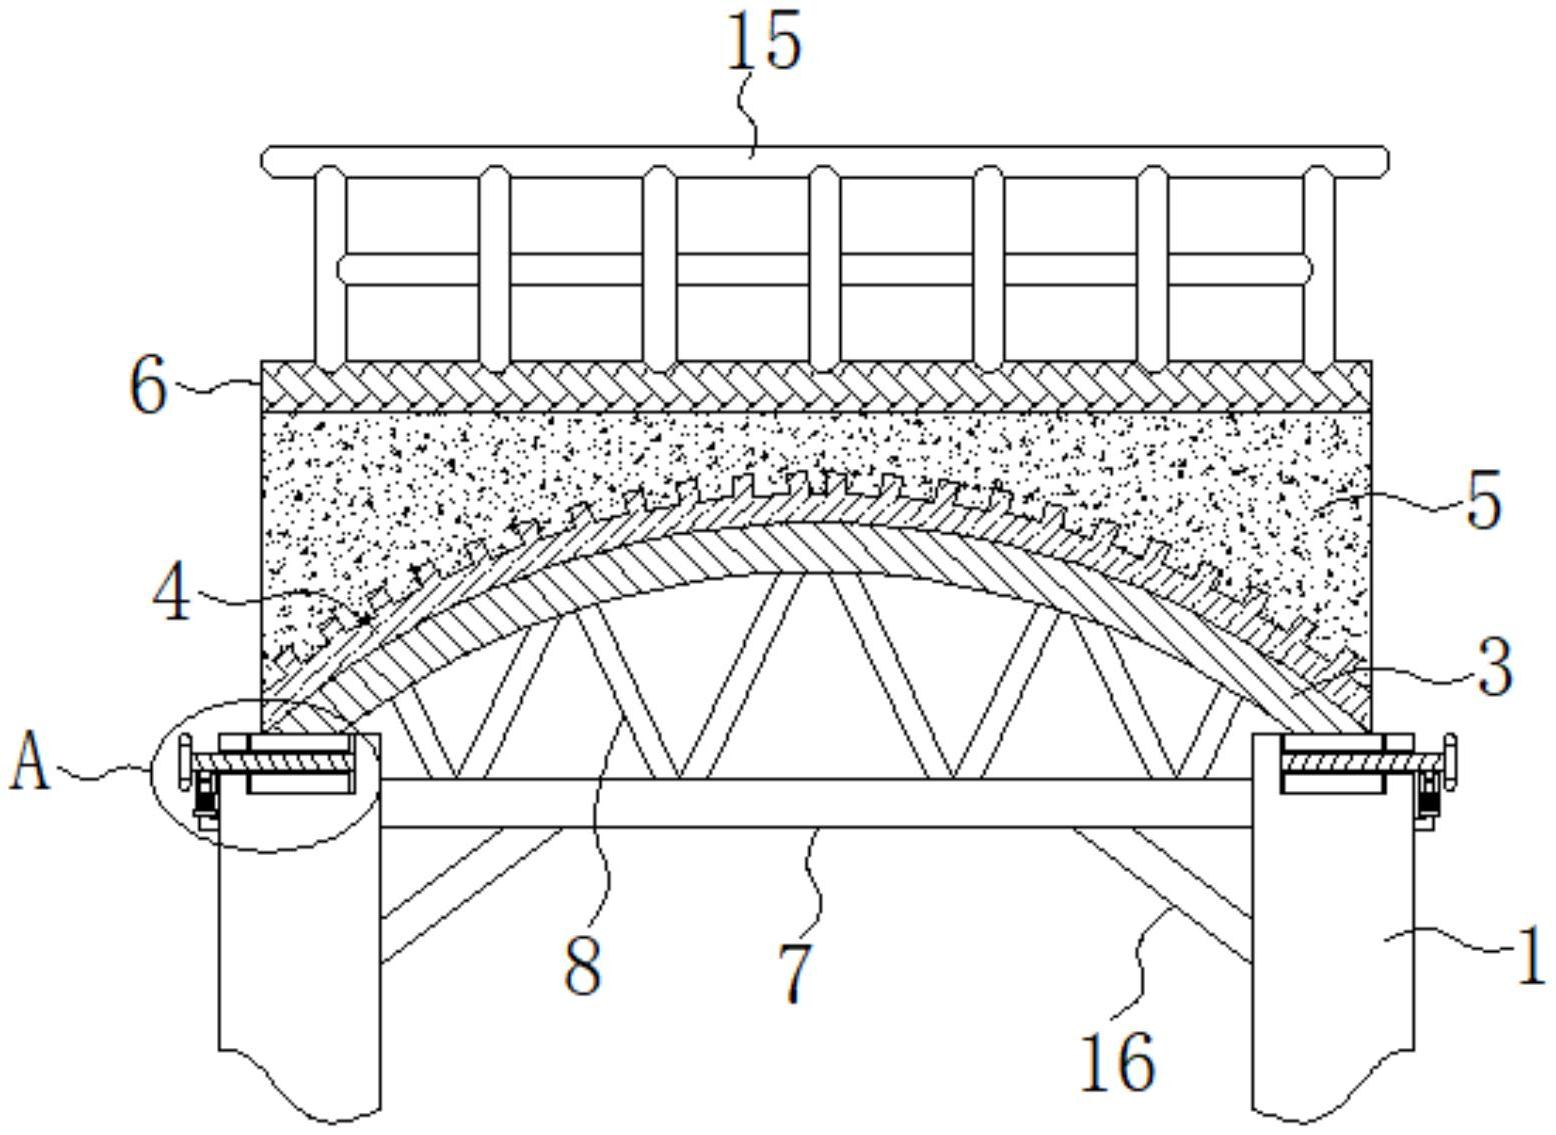 一种简易的装配式钢结构拱桥